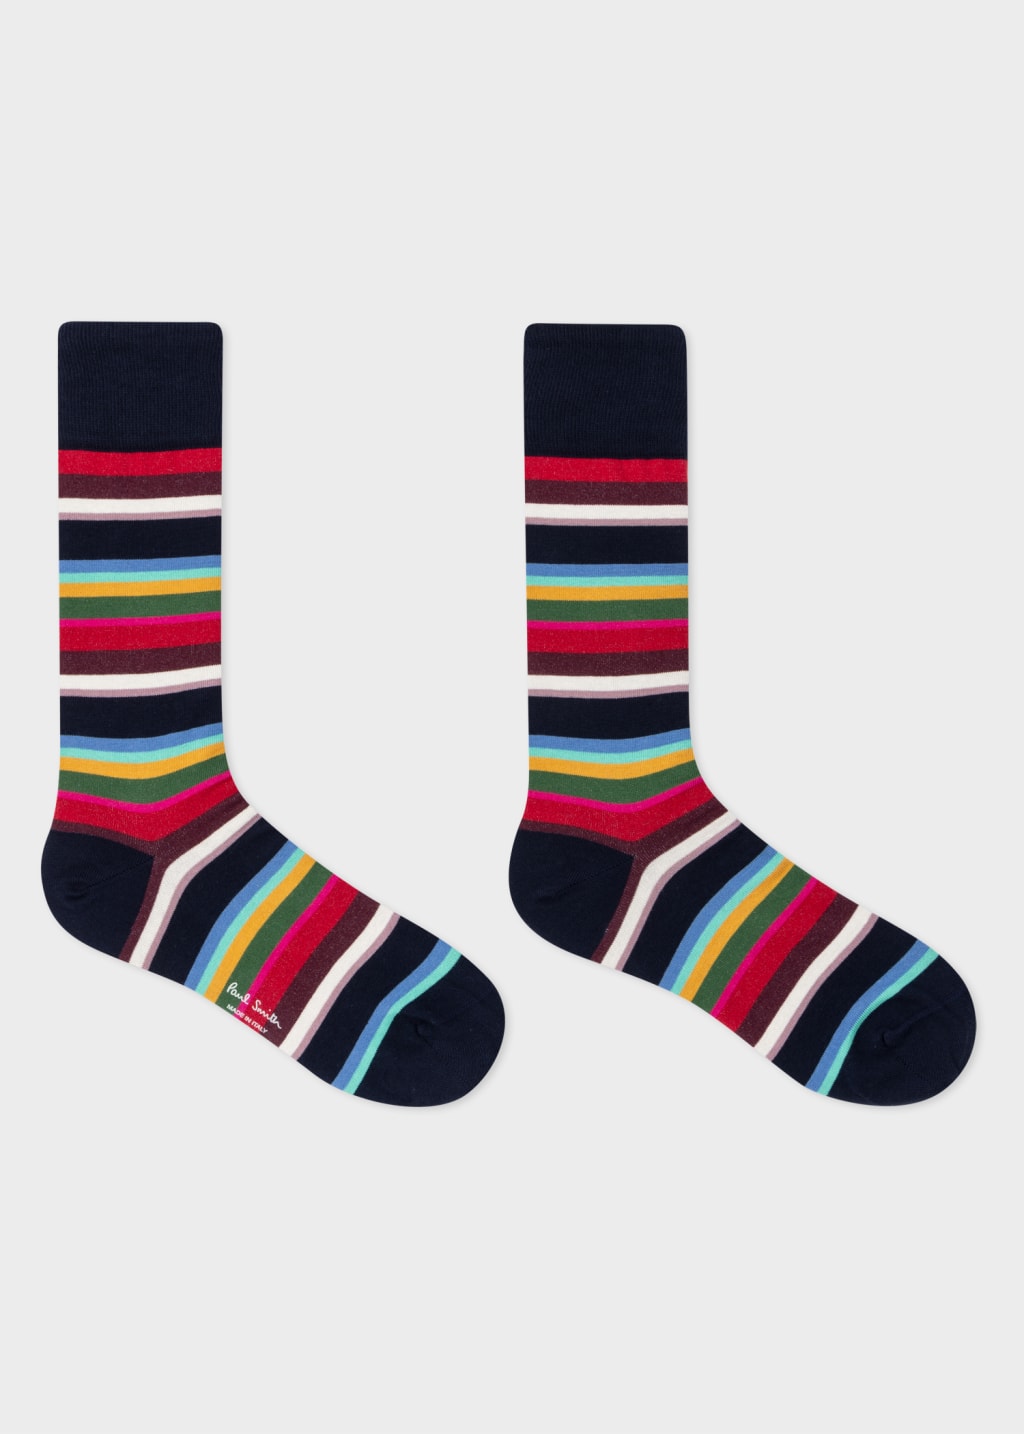 Pair View - Navy Multi-Stripe Socks Paul Smith